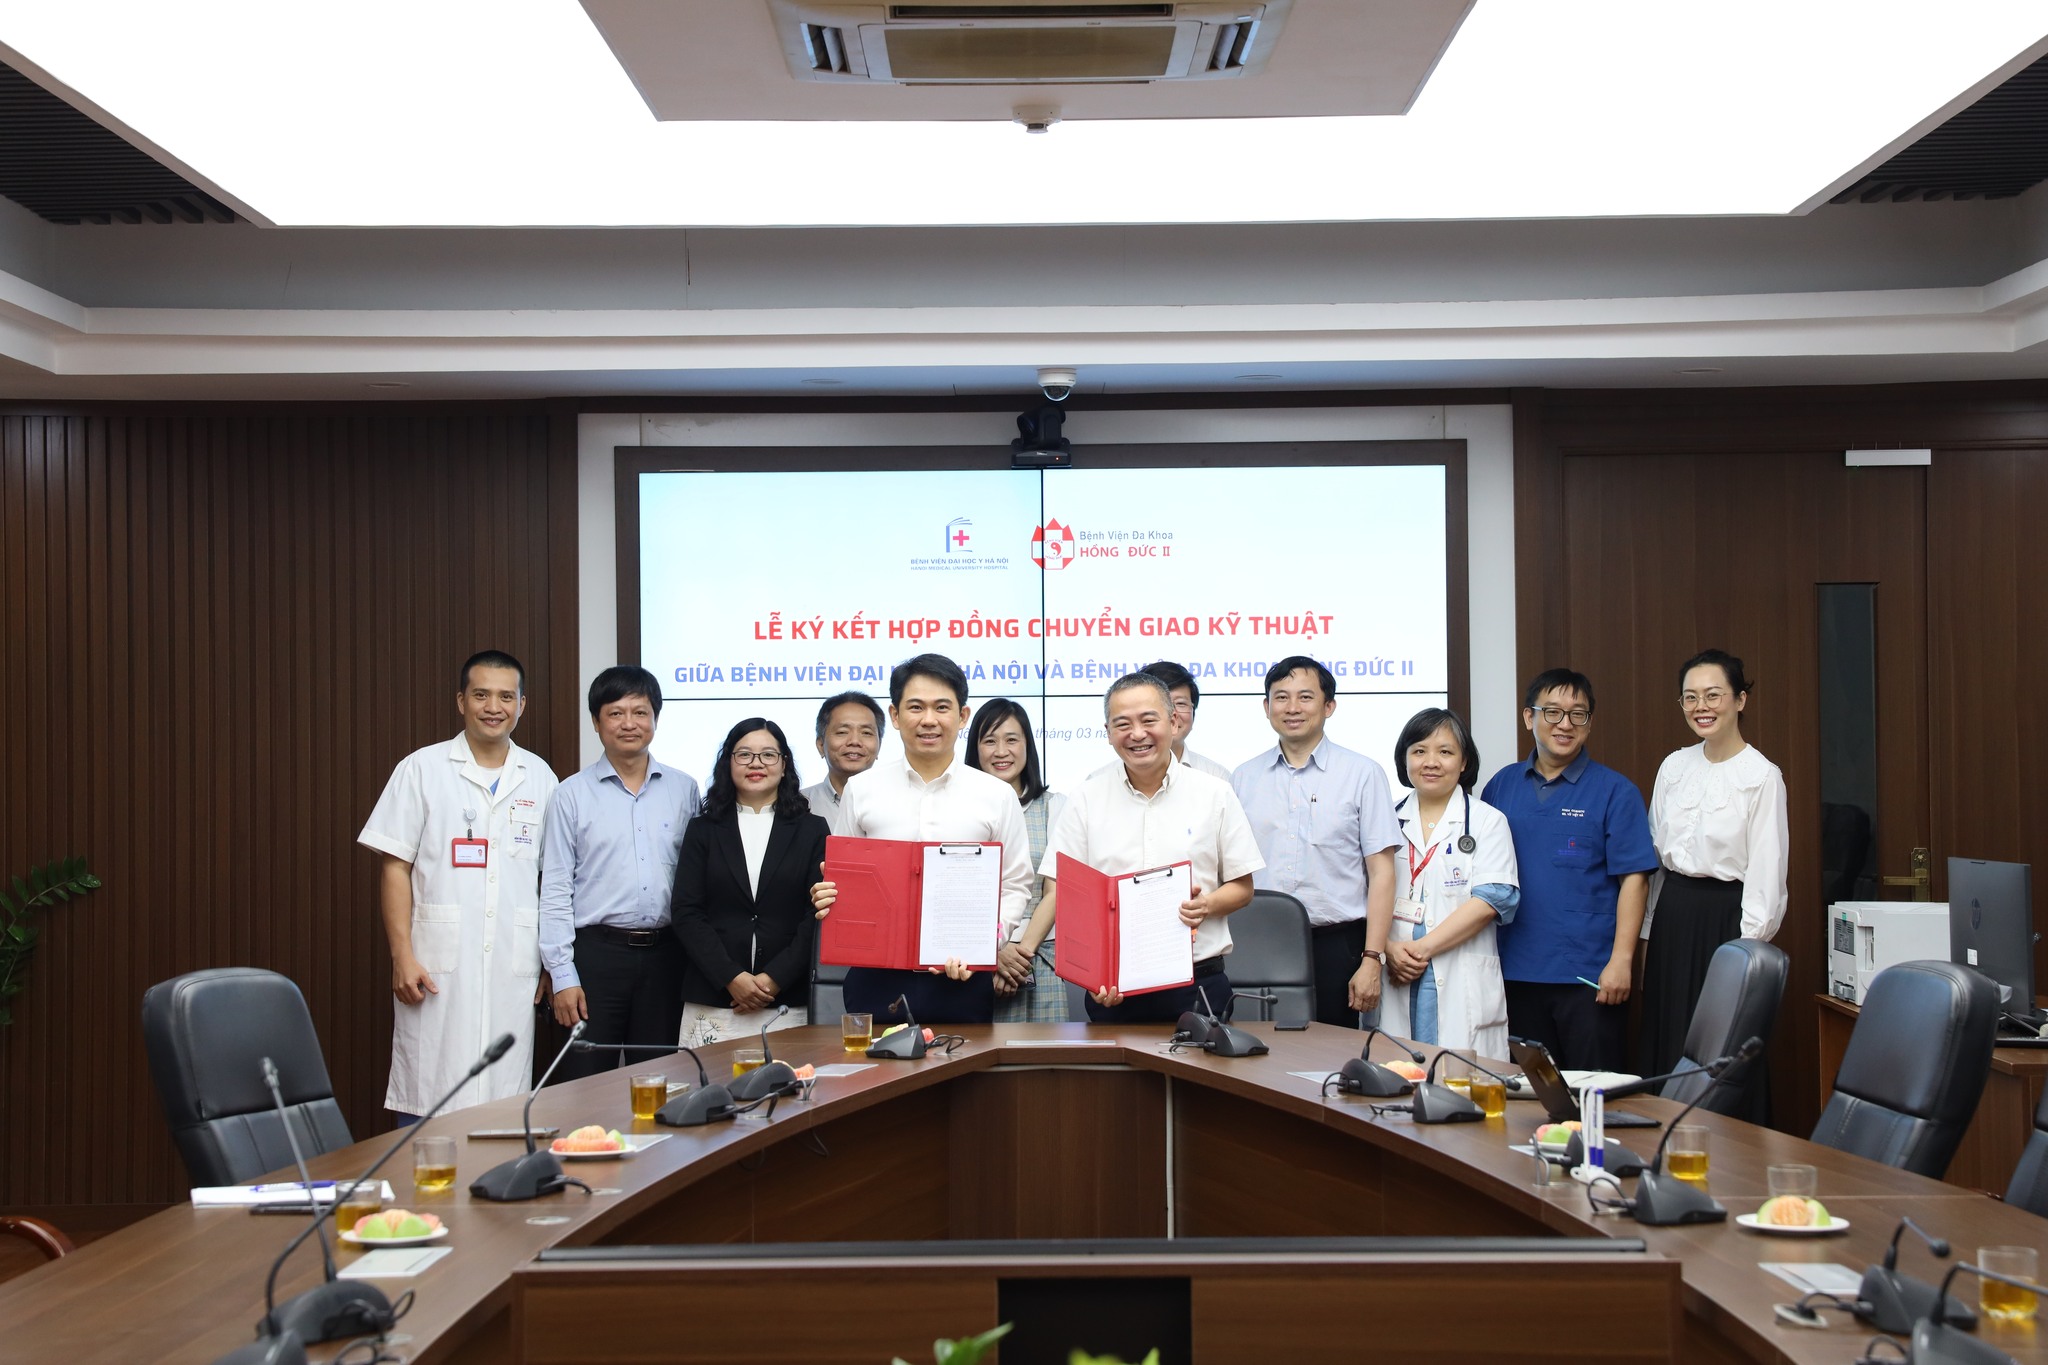 Bệnh viện Đại học Y Hà Nội hỗ trợ Hệ thống Bệnh viện Đa khoa Hồng Đức (TP.HCM) nâng cao năng lực chuyên môn và triển khai nhiều phân hệ của TeleHealth 